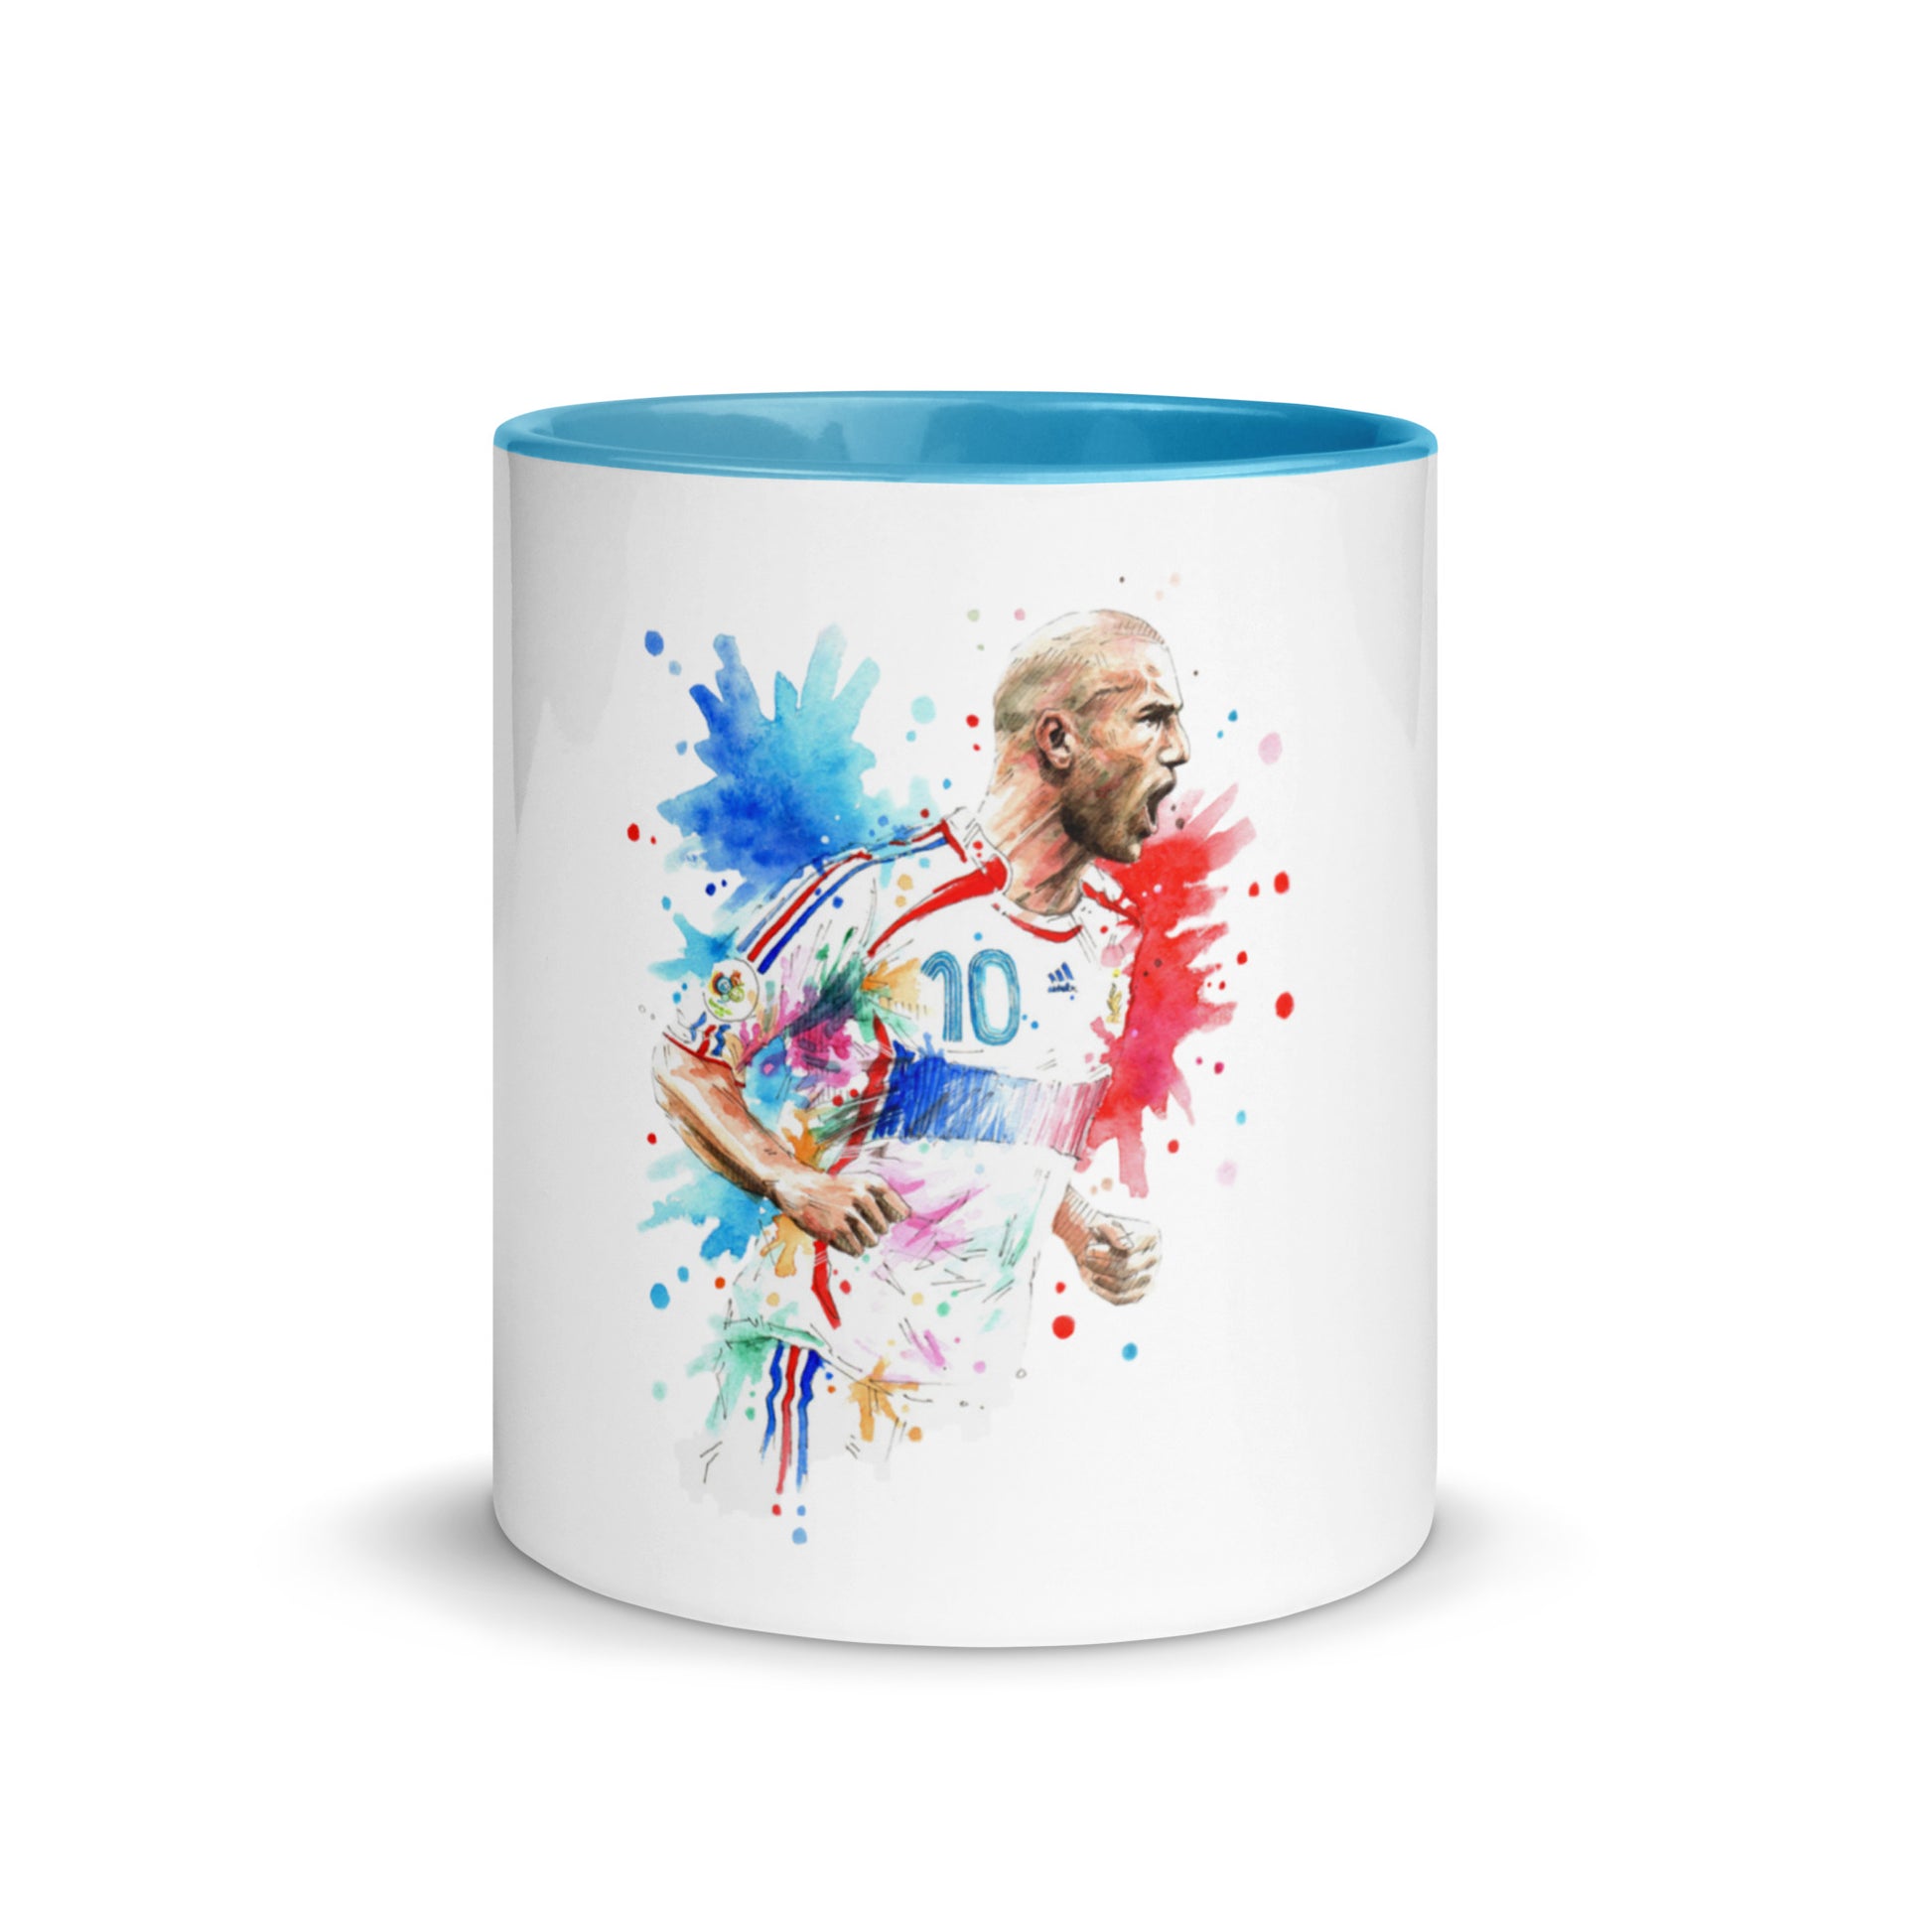 France Zinadine Zidane "Zizou" Vintage Coffee Mug with Color Inside - The 90+ Minute